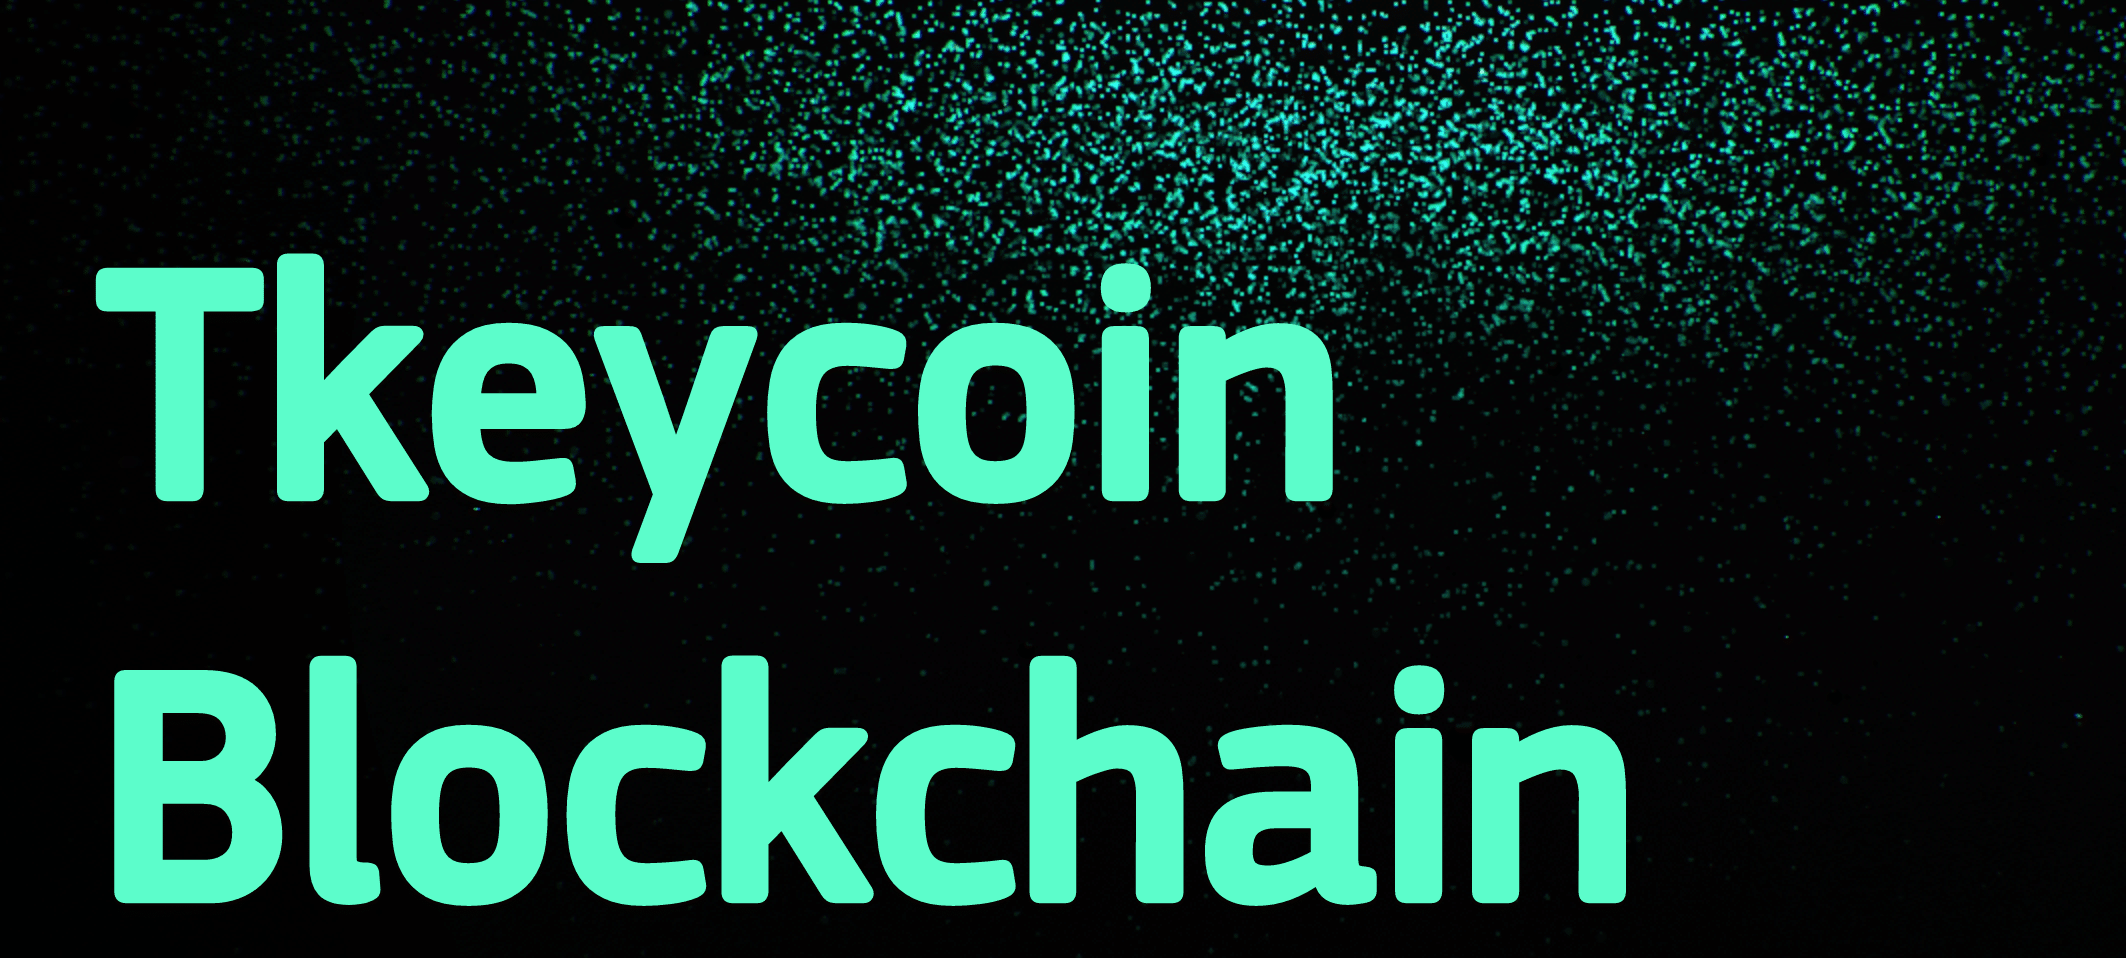 tkeycoin blockchain